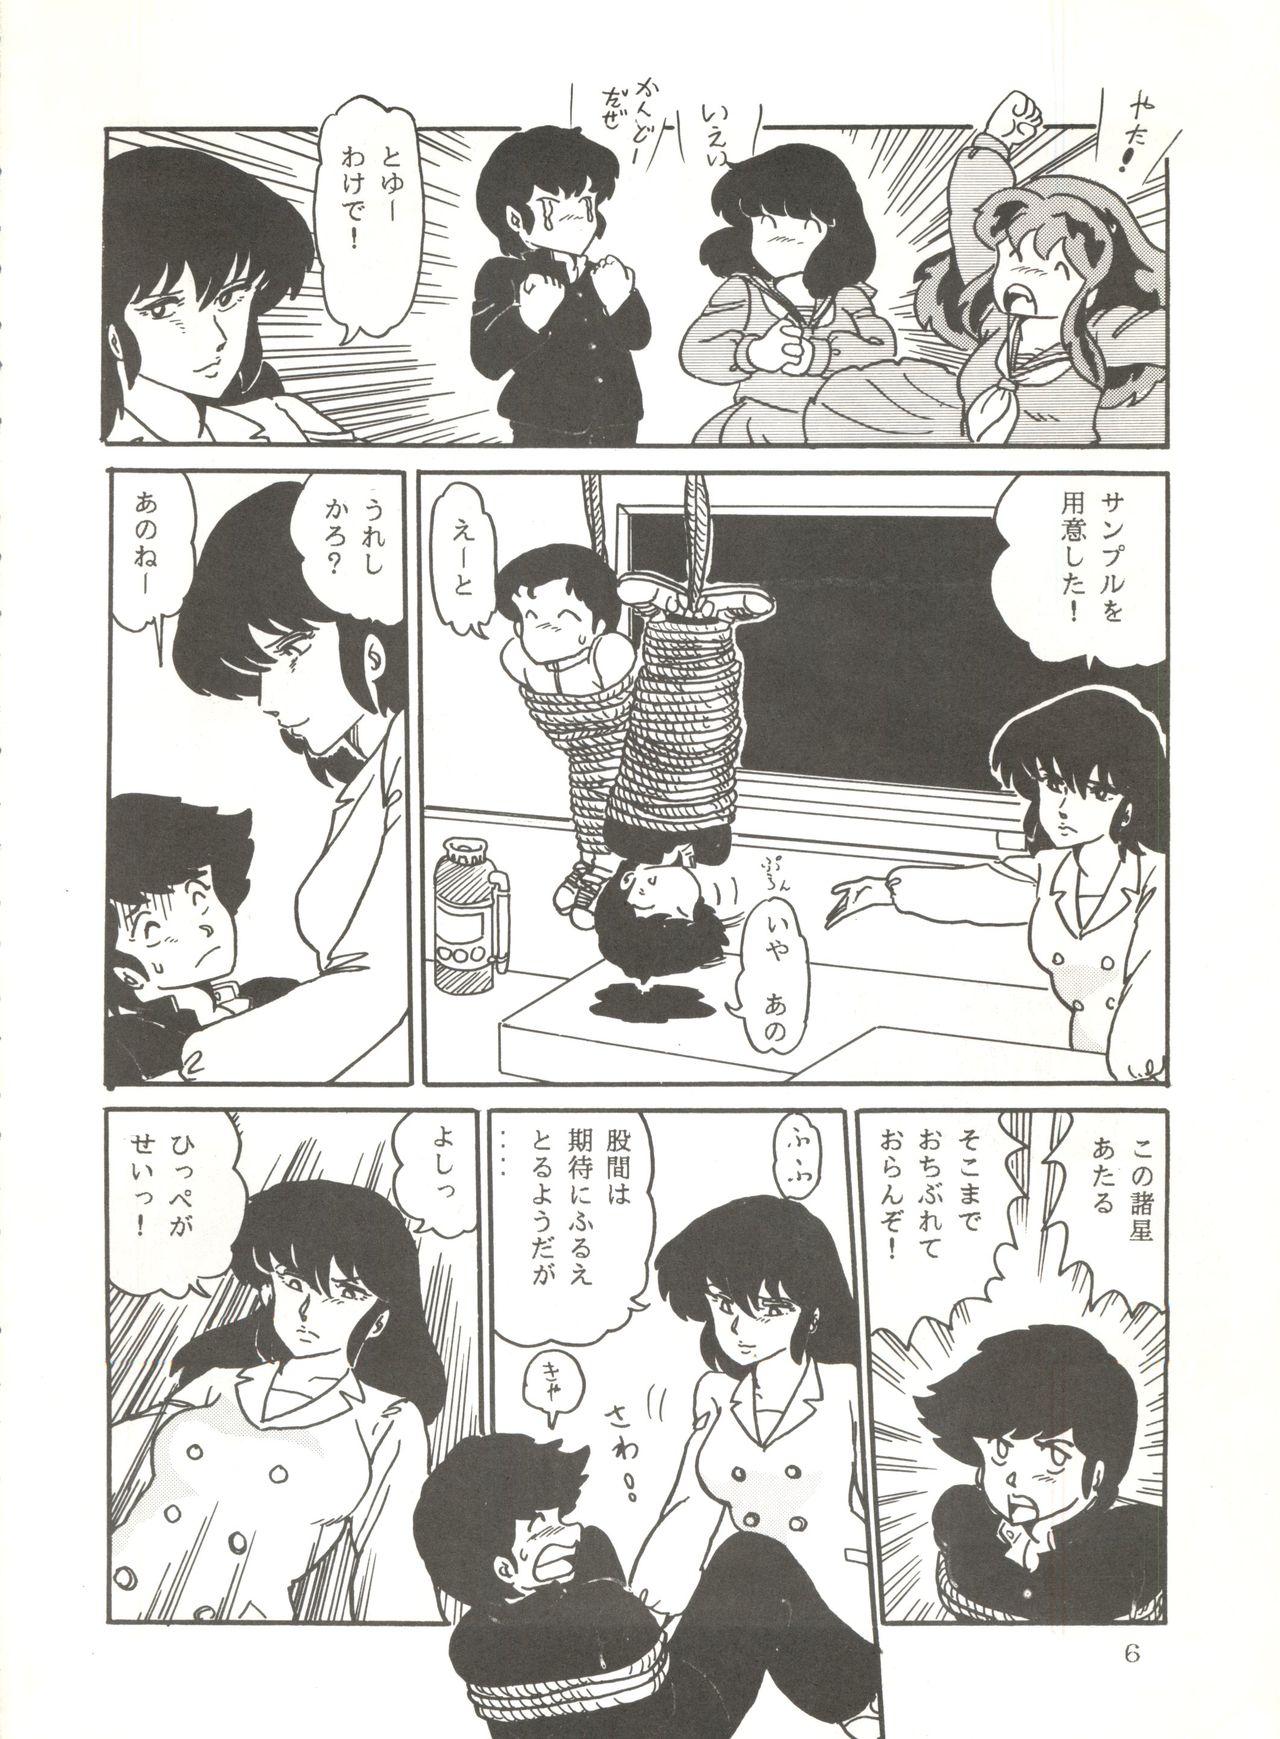 Huge Shijou Saiaku no Lum 4 - Urusei yatsura Funk - Page 5